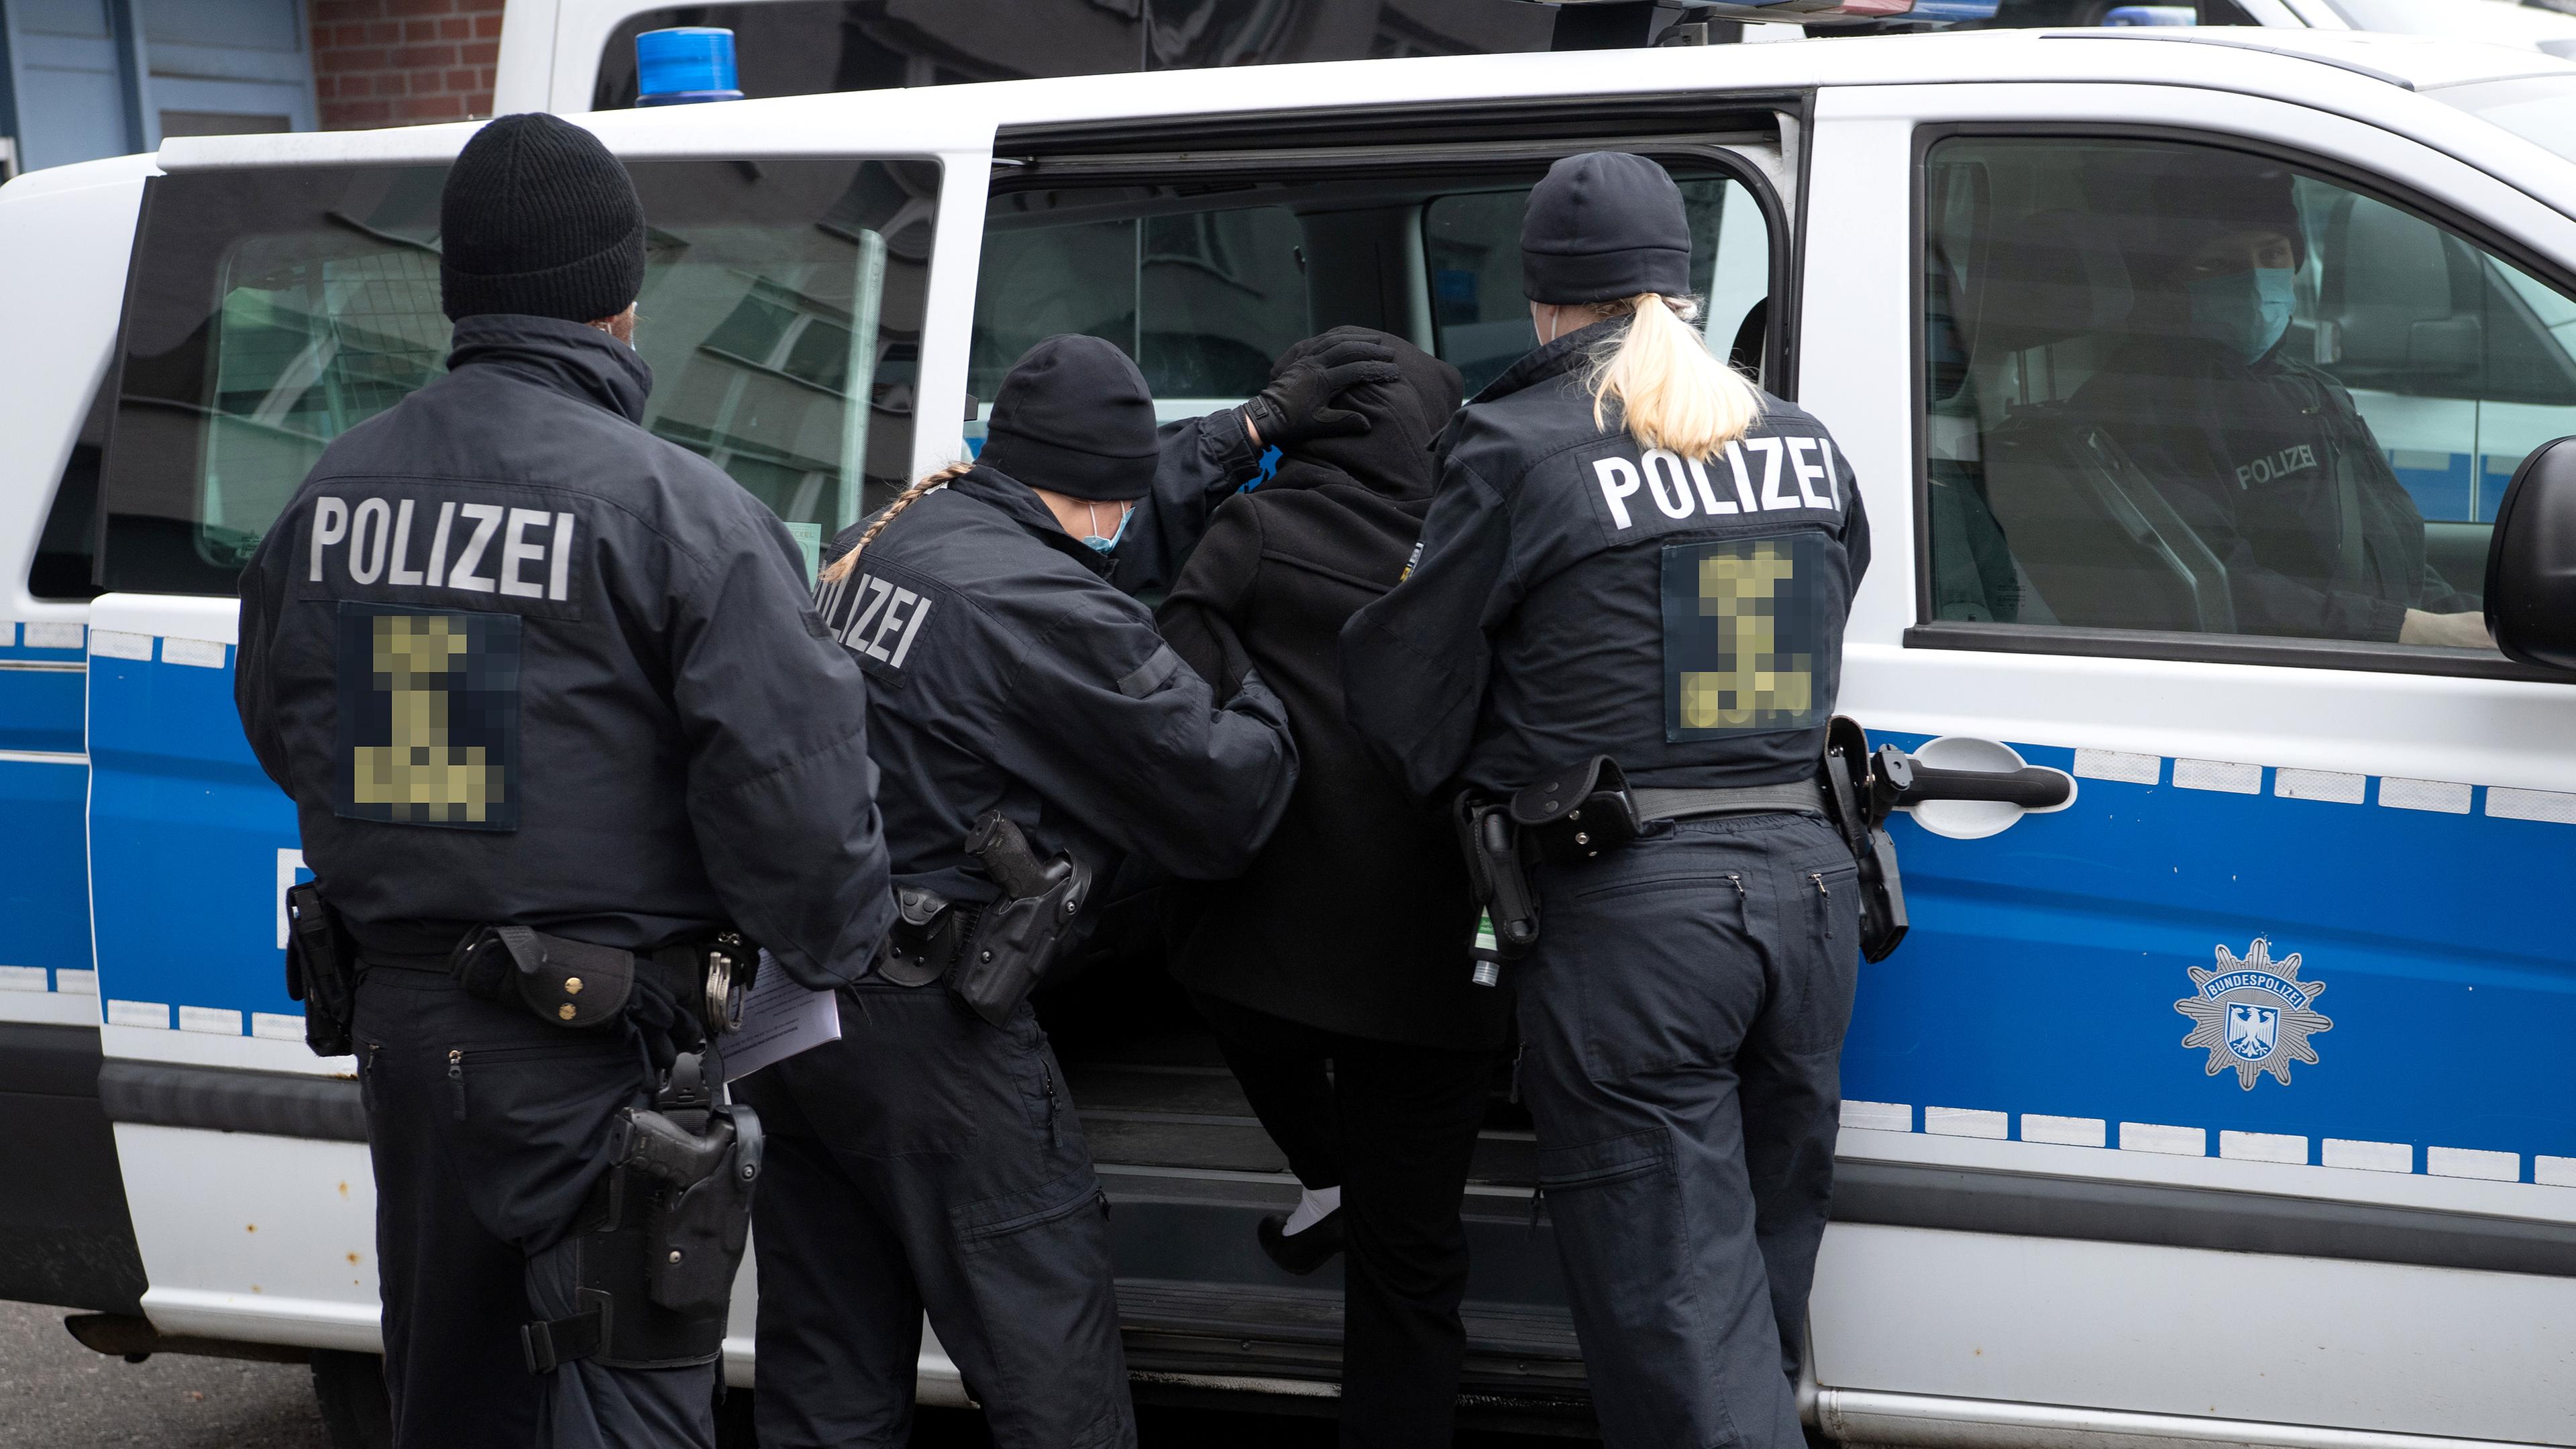 Bundespolizisten führen in Lichtenberg nach einer Razzia die Beschuldigte ab, aufgenommen am 17.03.2021 in Berlin